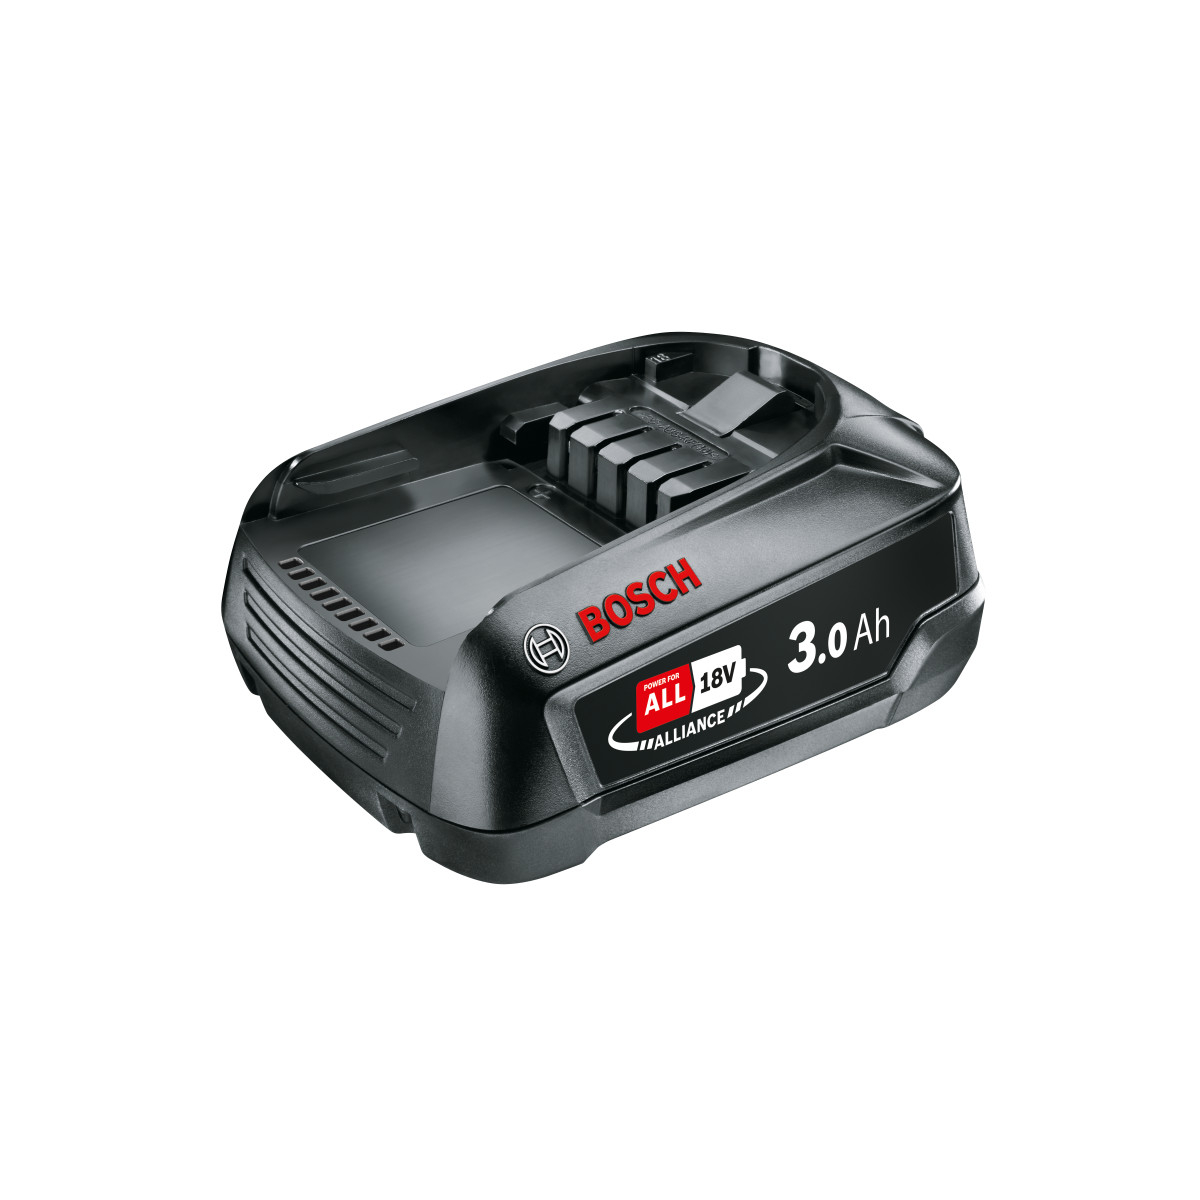 Bosch Batterie PBA 18V 3.0Ah W-B (BHZUB1830)